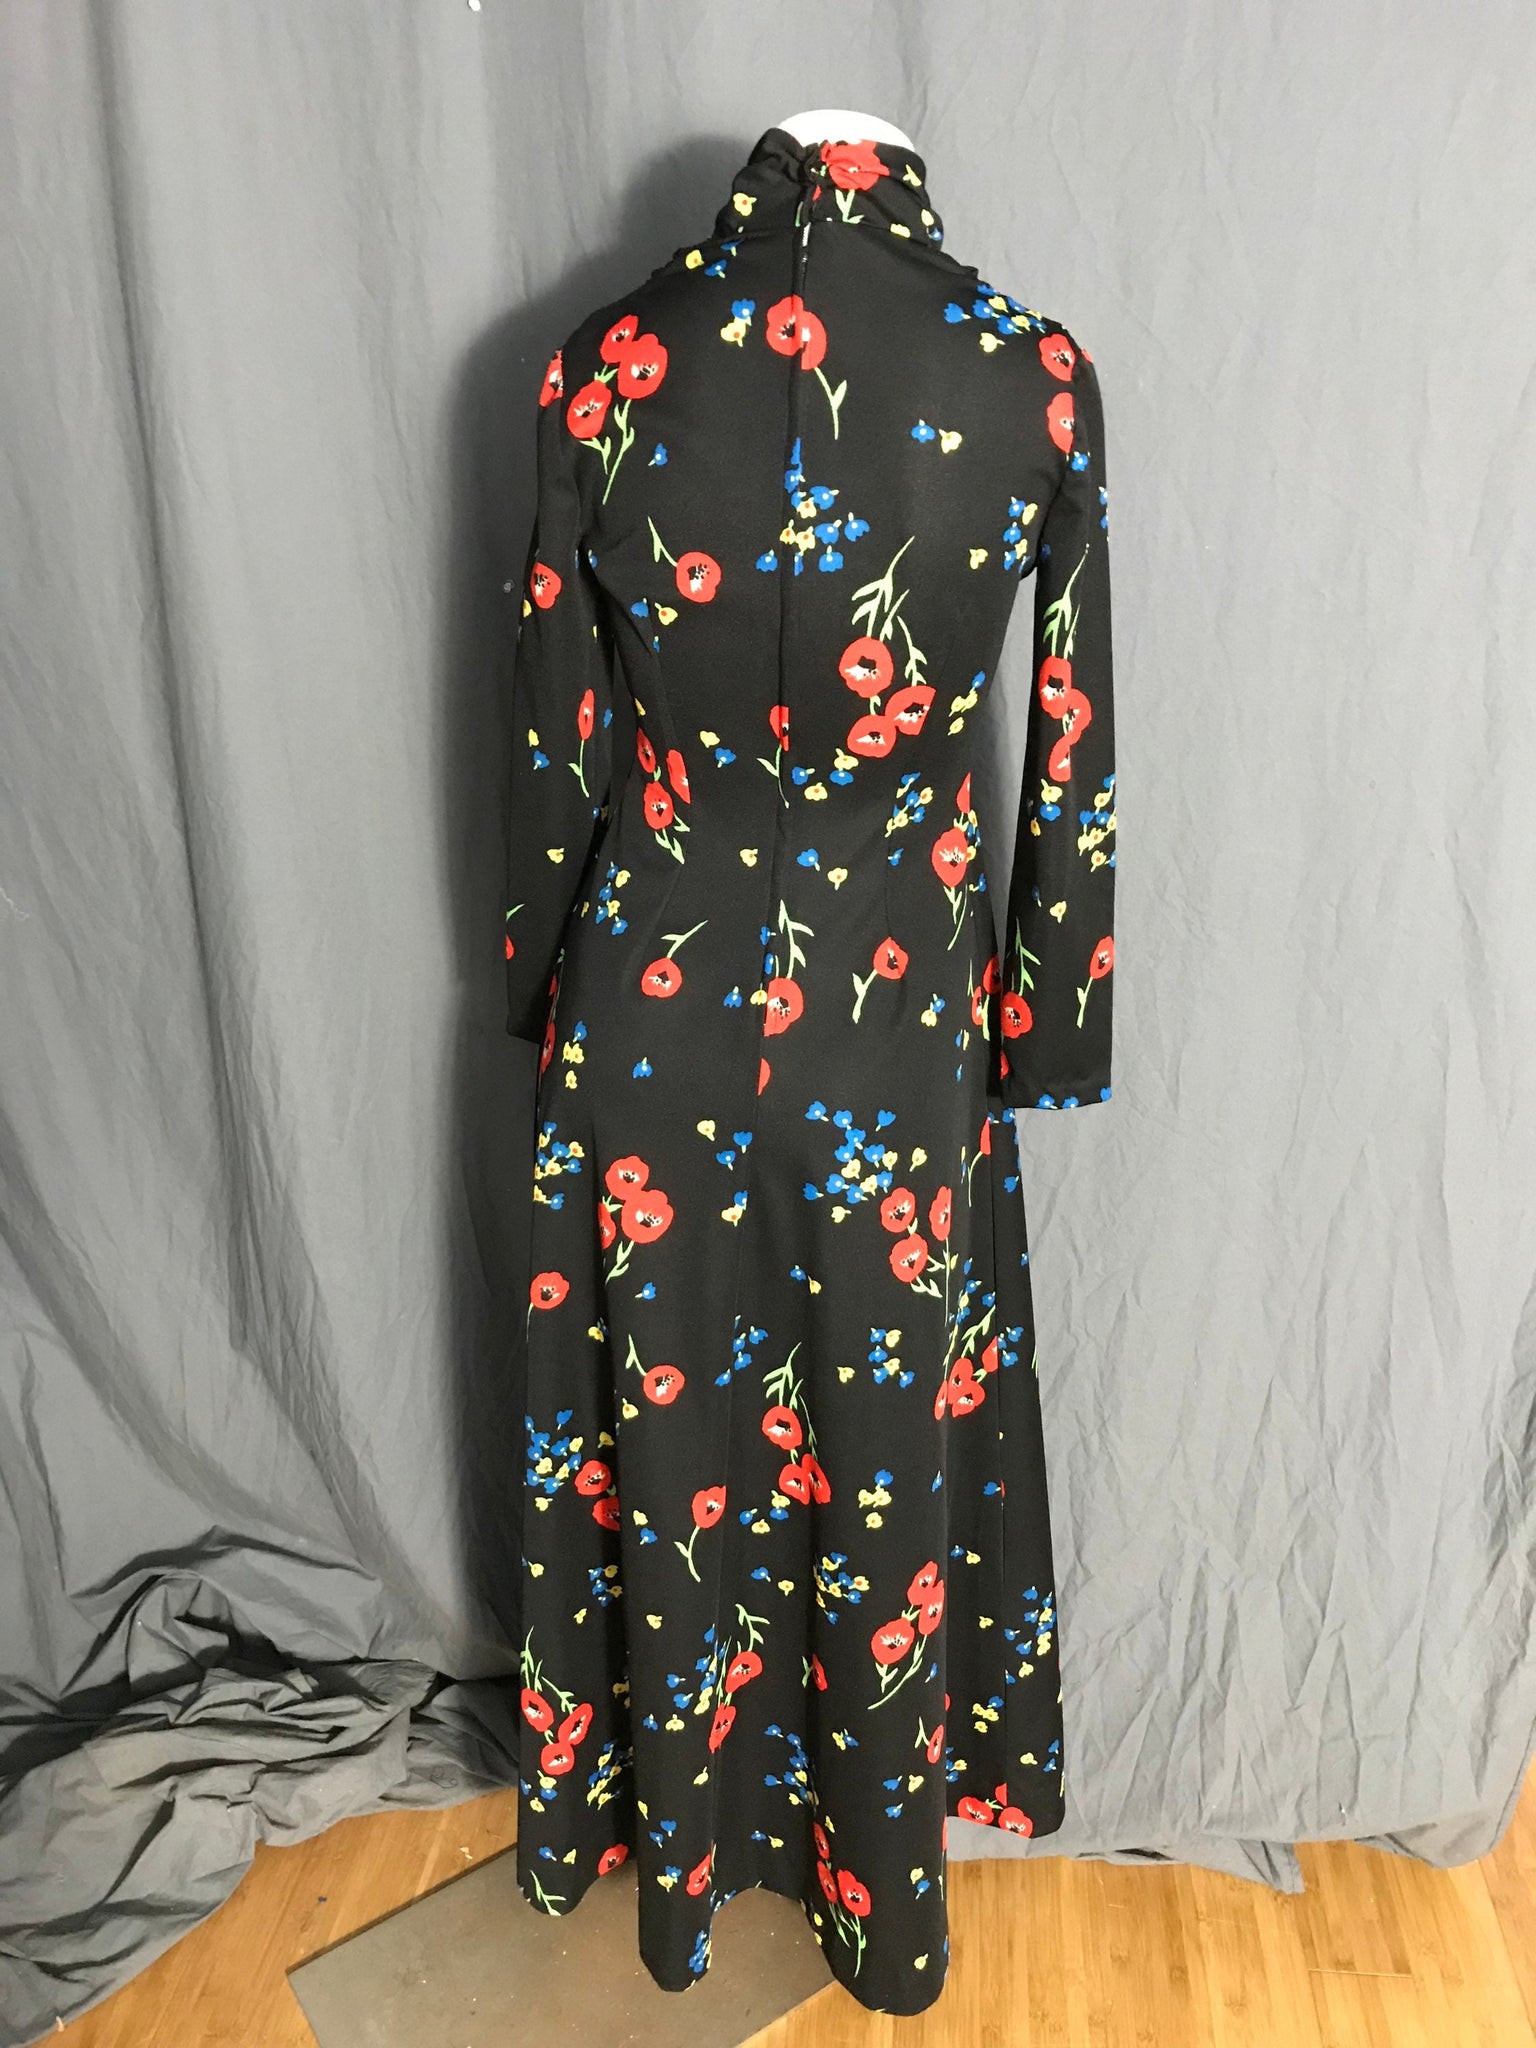 Vintage 1970’s bold mod black floral dress S